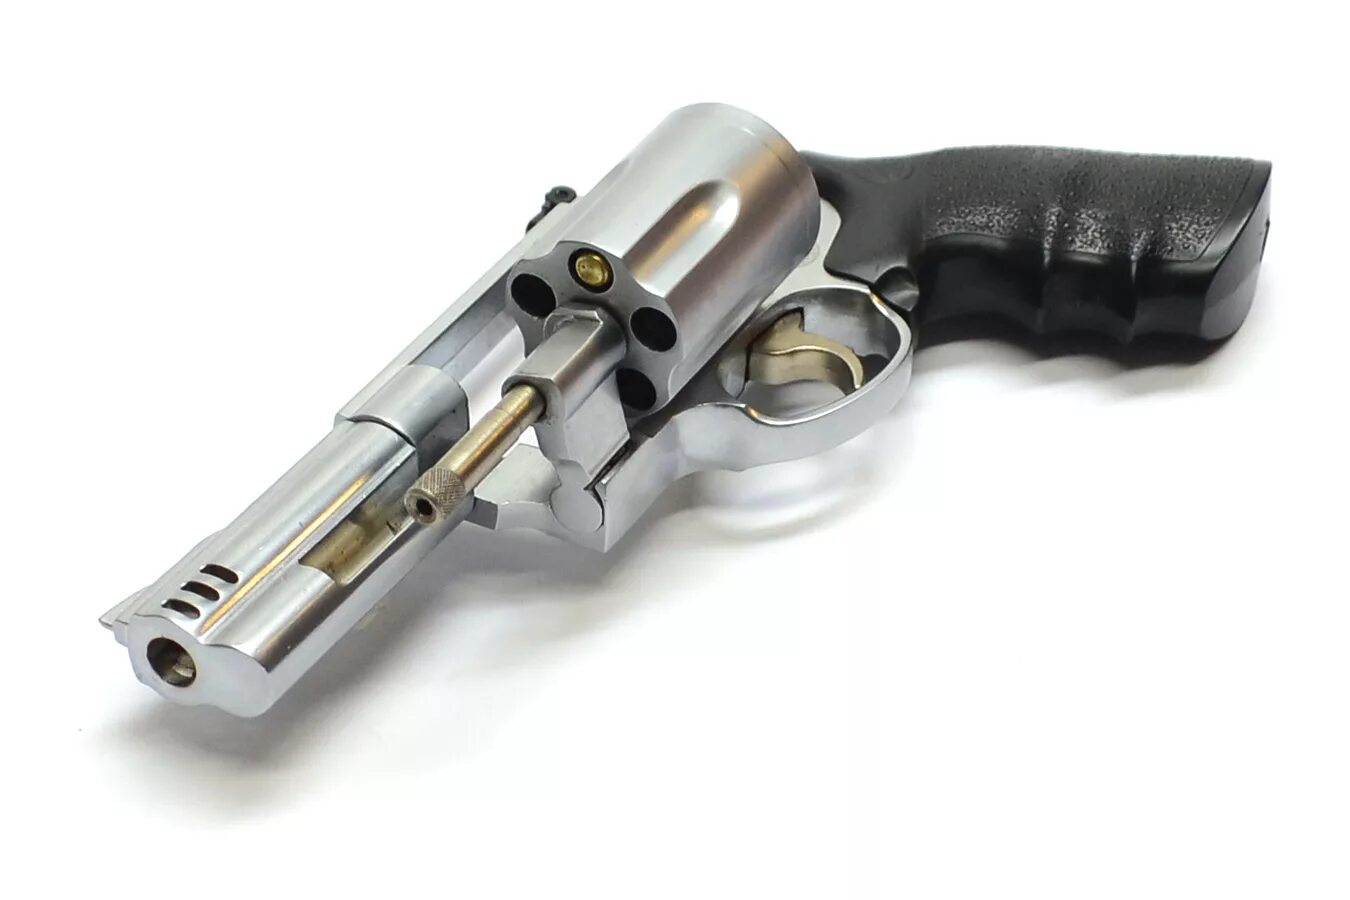 Револьвер 500. SW 500 Magnum револьвер. Револьвер Smith Wesson 500. Смит-Вессон 500 Магнум. Револьвер Смит-Вессон 500 Магнум.